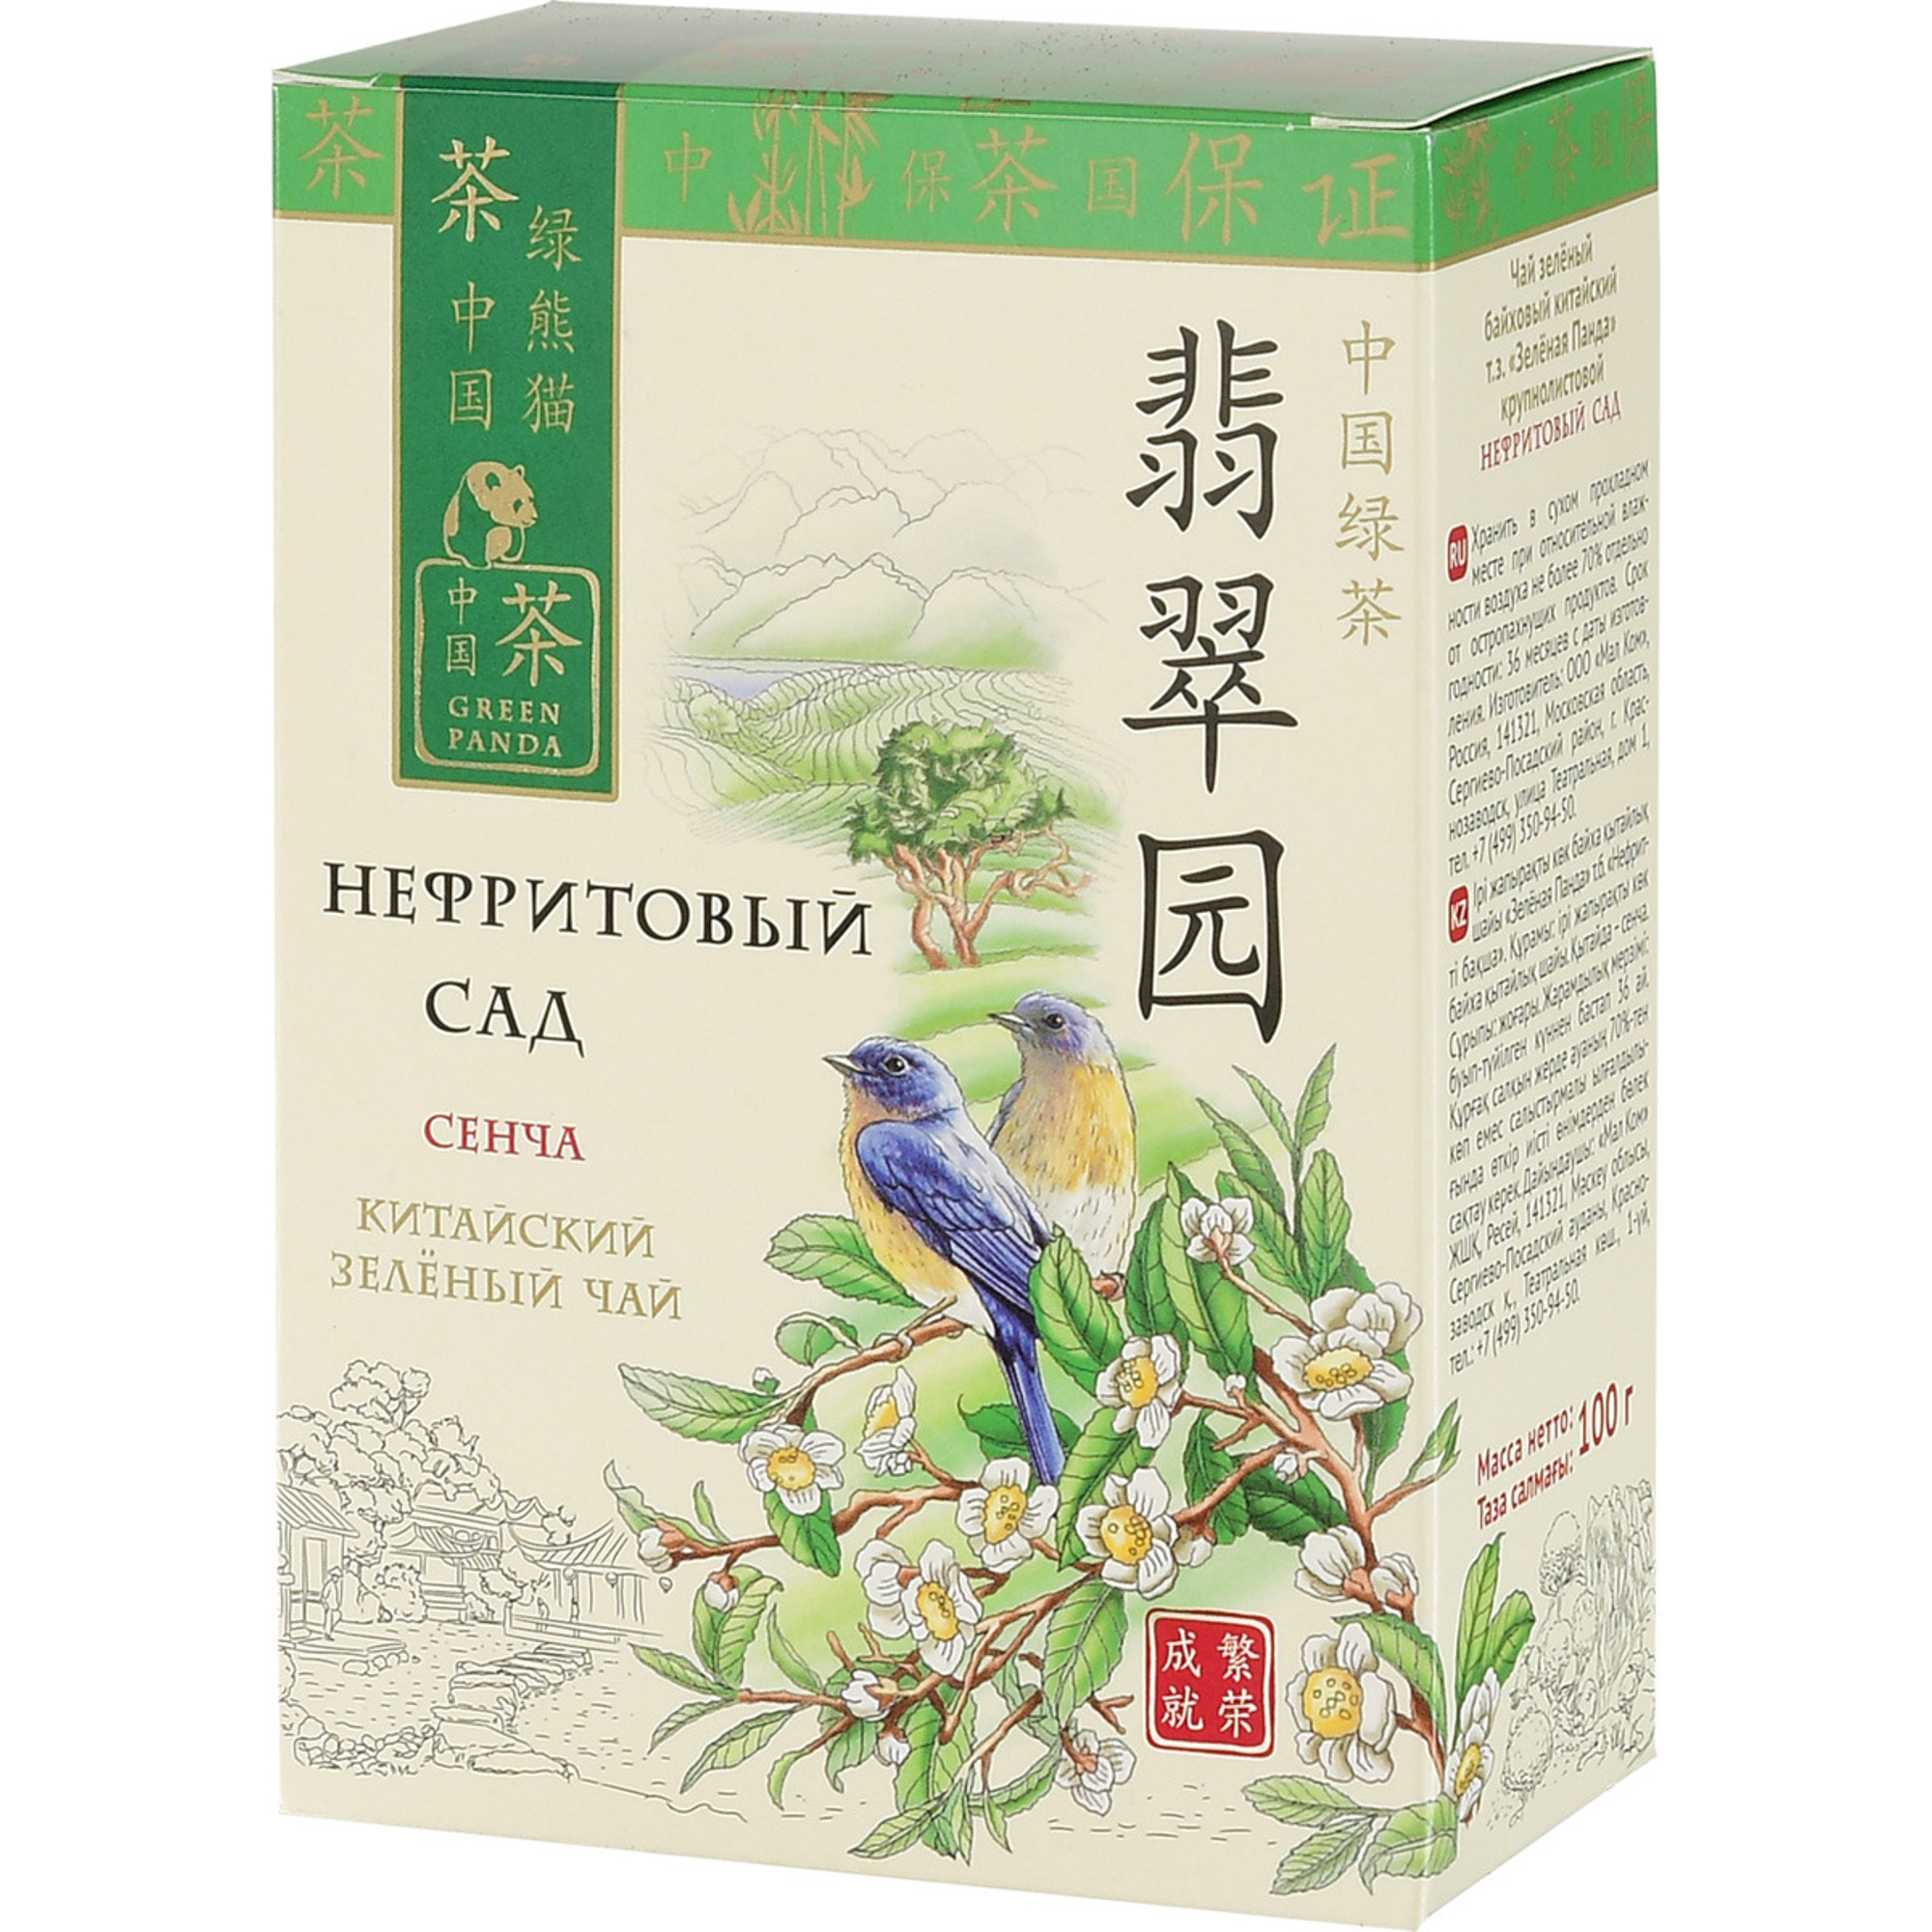 Чай зеленый Зеленая Панда Нефритовый сад Сенча листовой 100 г чай грузинский зеленый листовой permeris 100 г